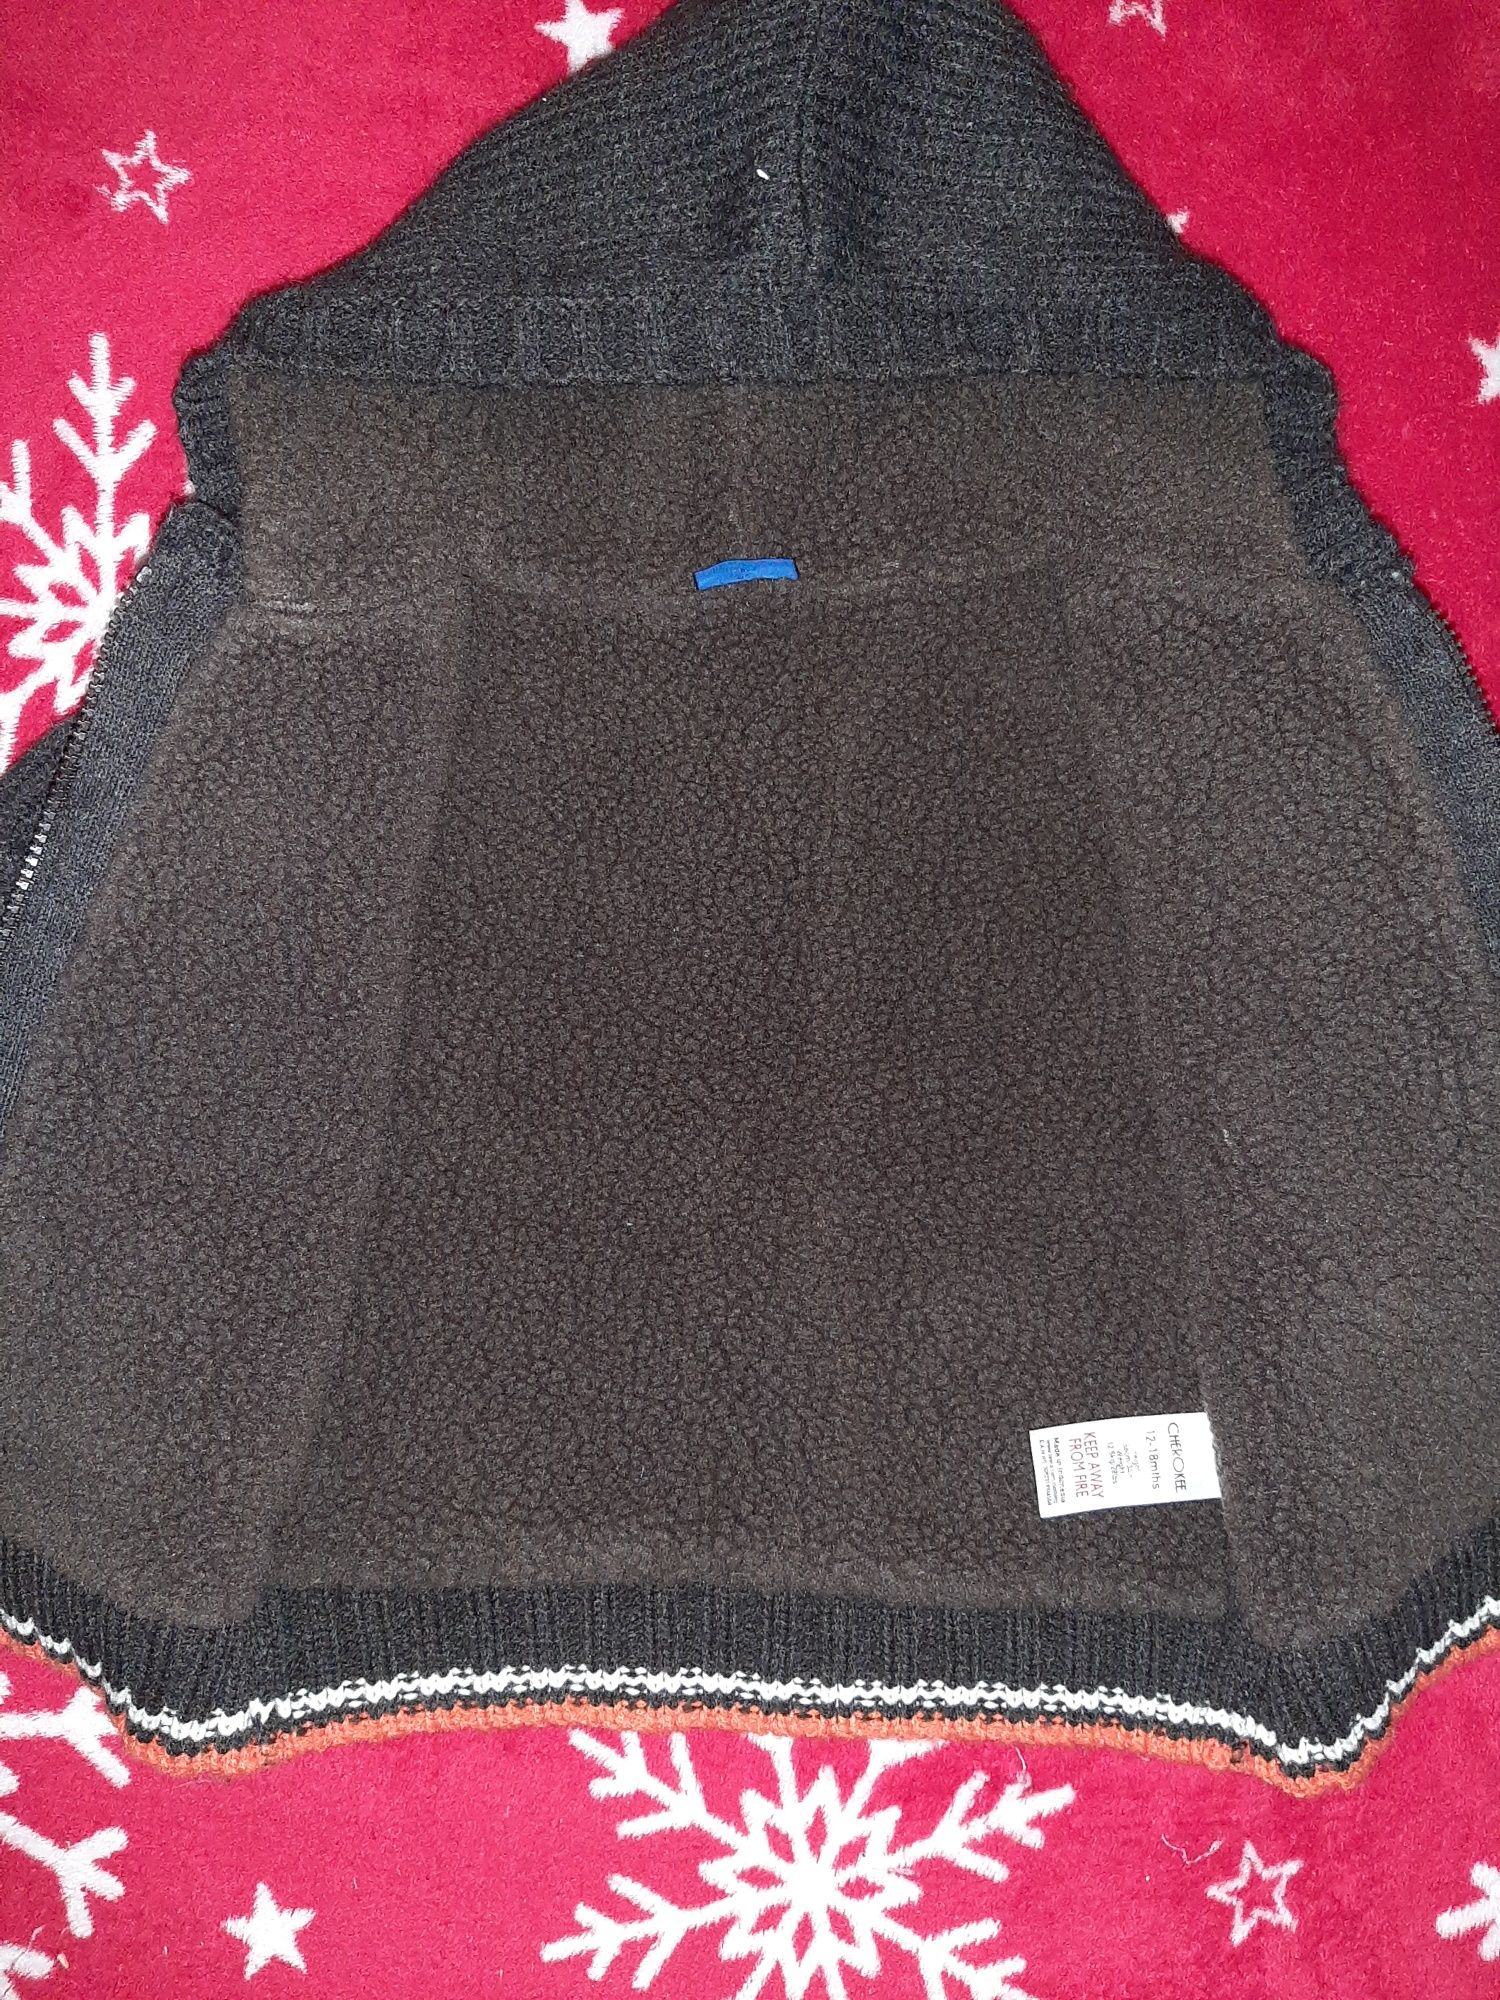 Gruby zimowy sweterek z kożuszkiem 12-18m 86-92 cm